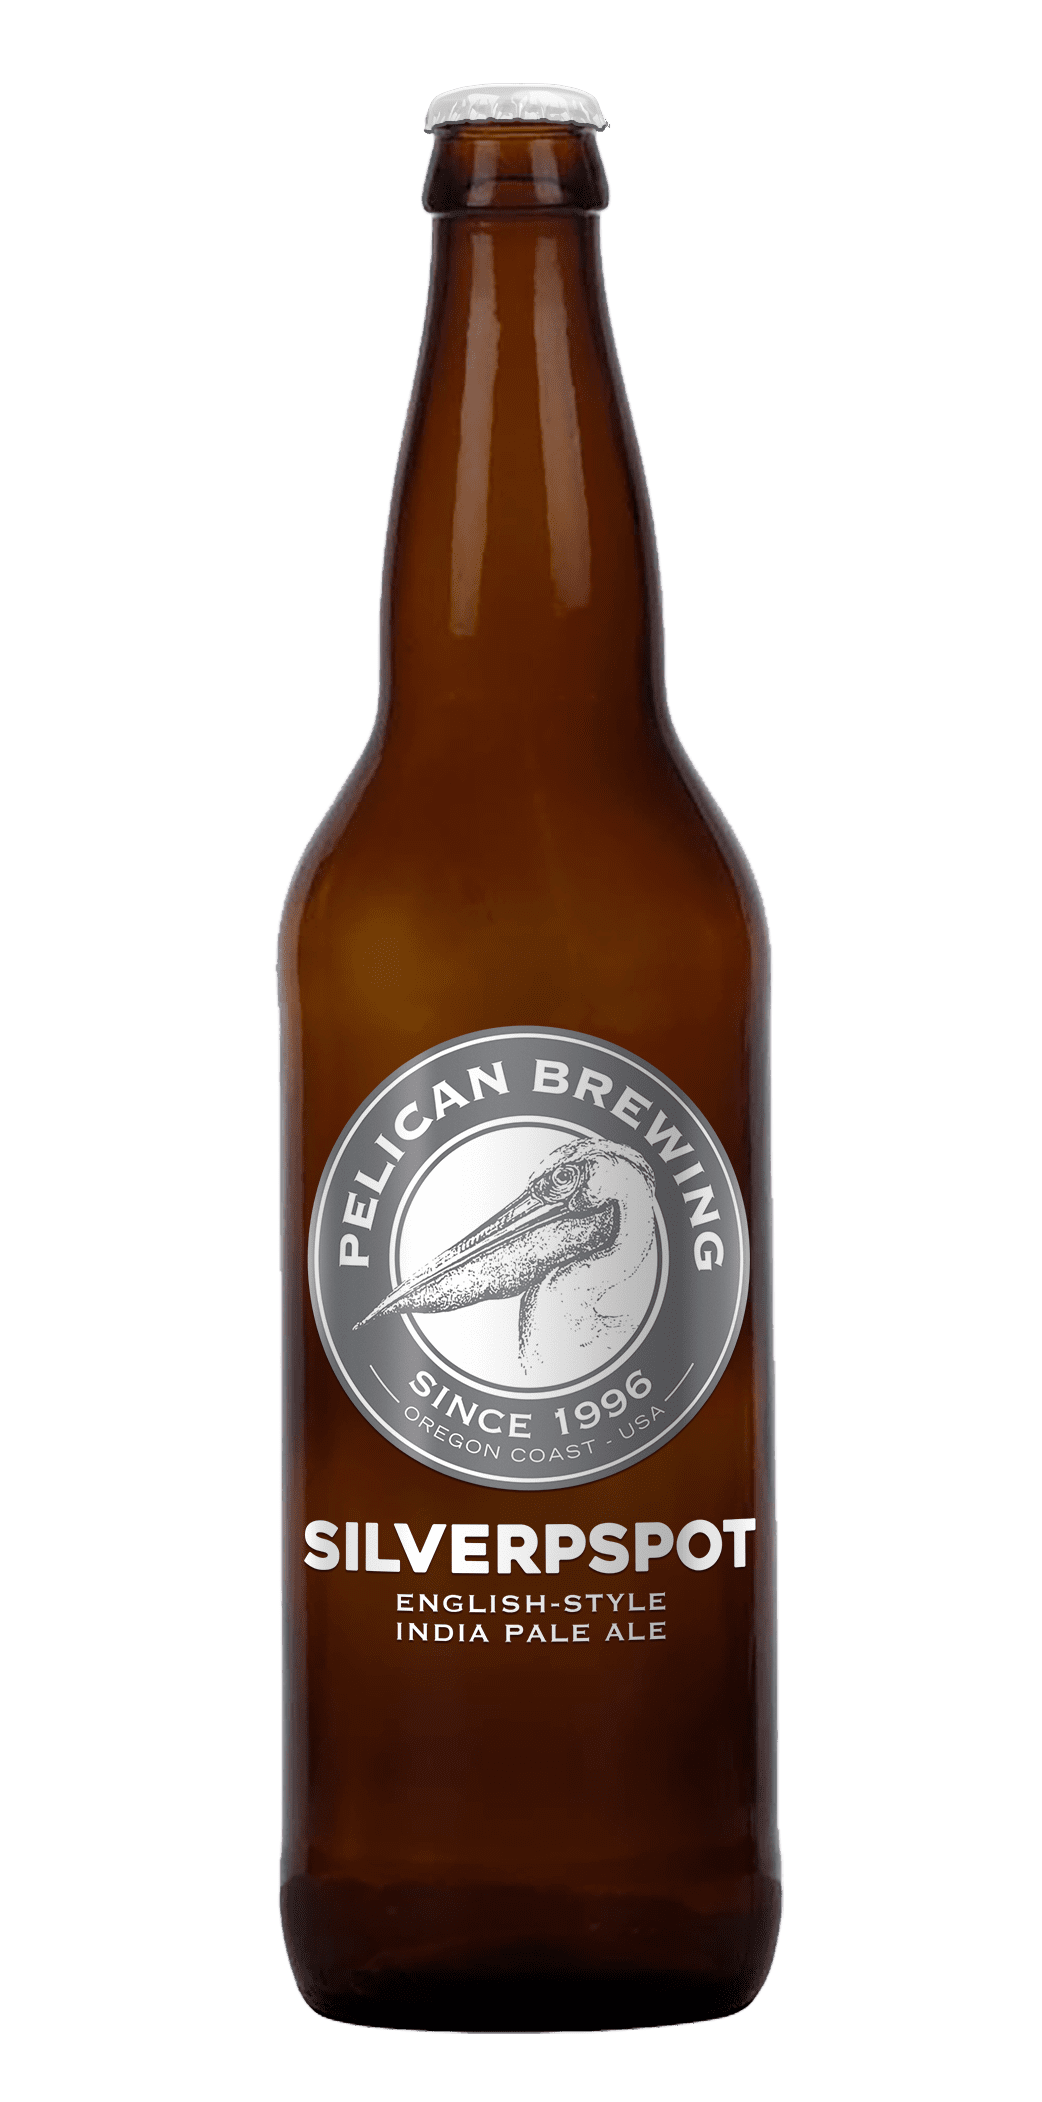 Pelican Brewing Company